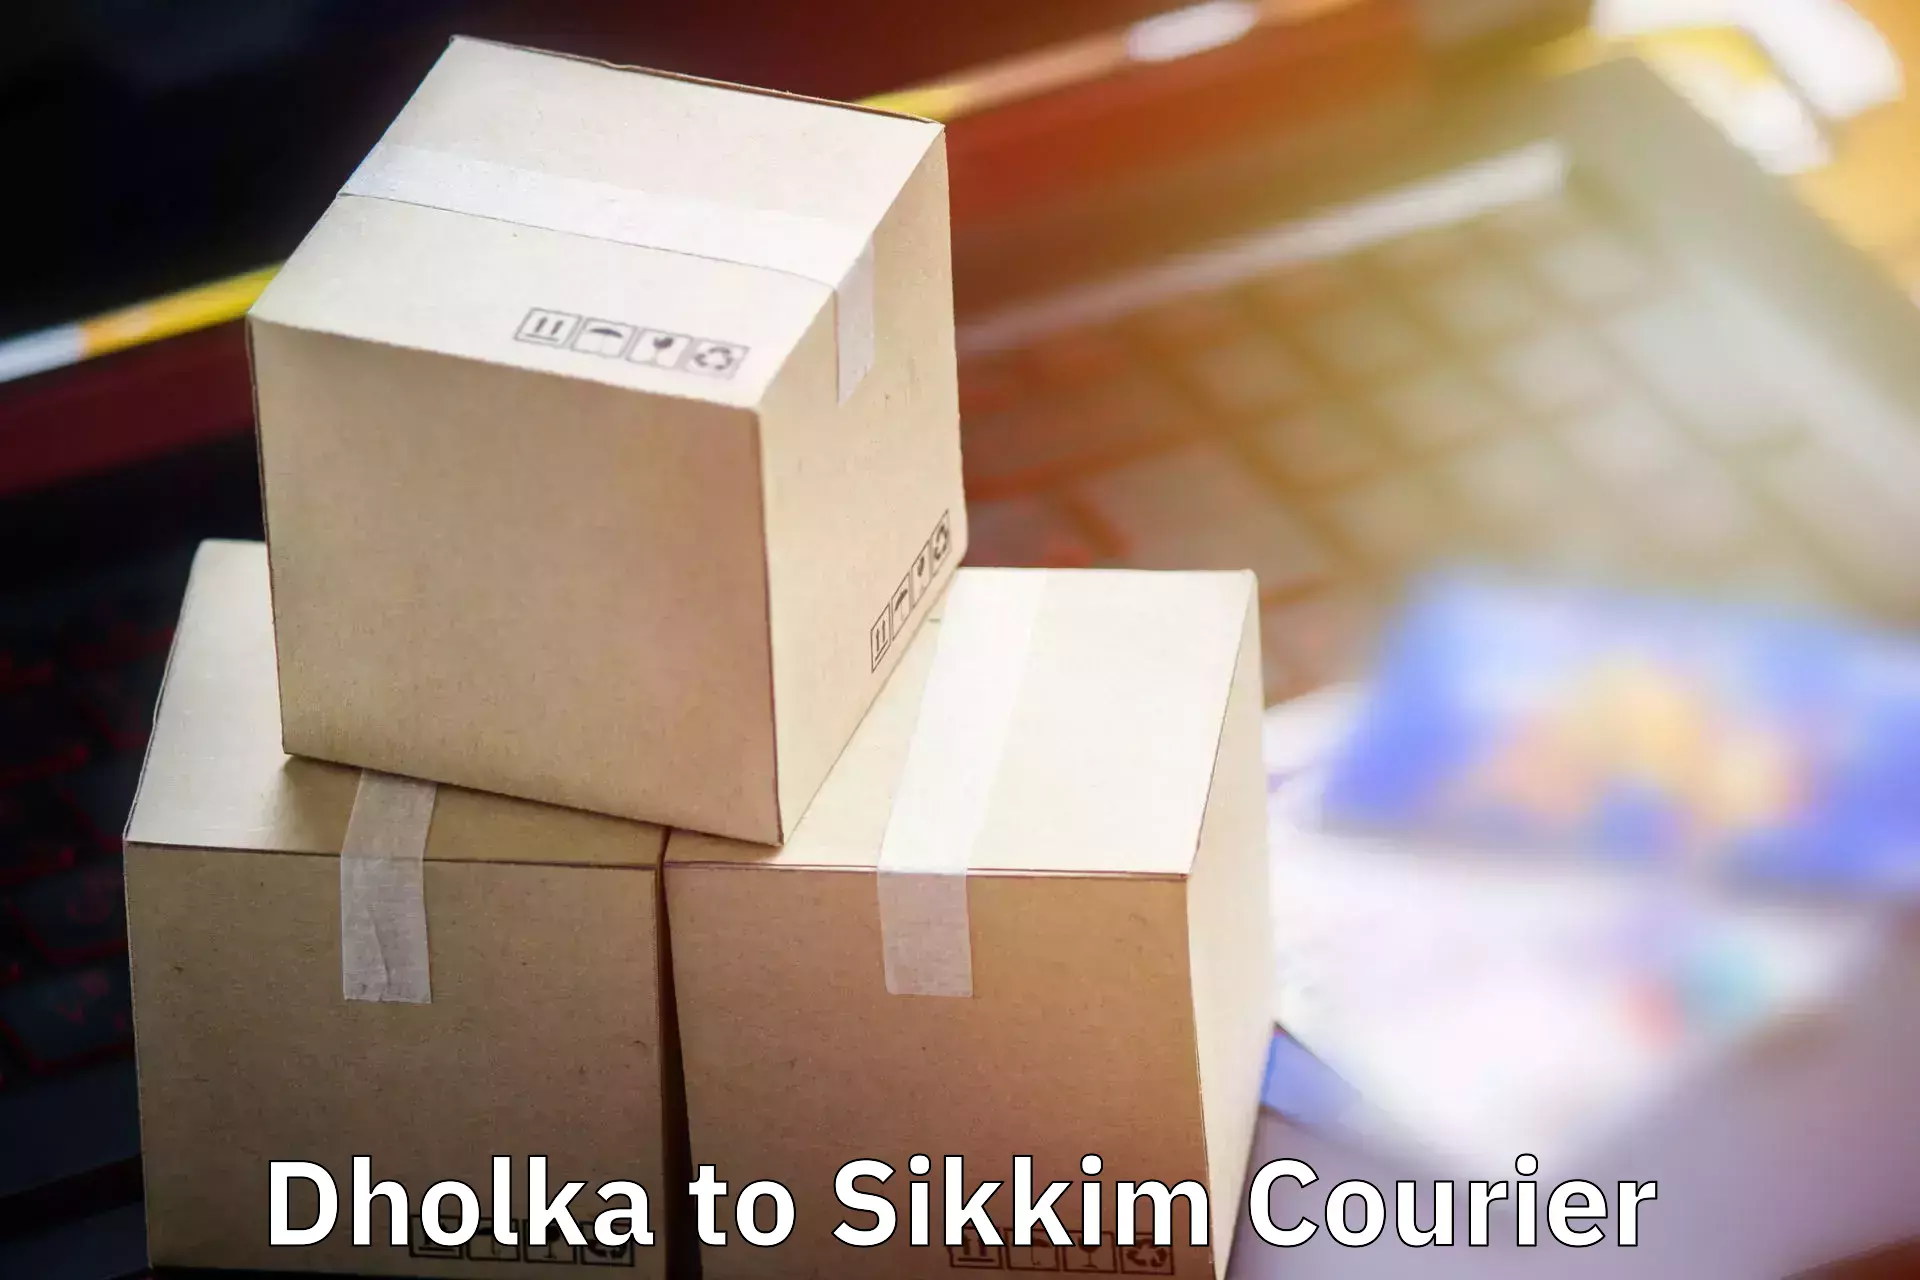 Baggage transport management Dholka to East Sikkim